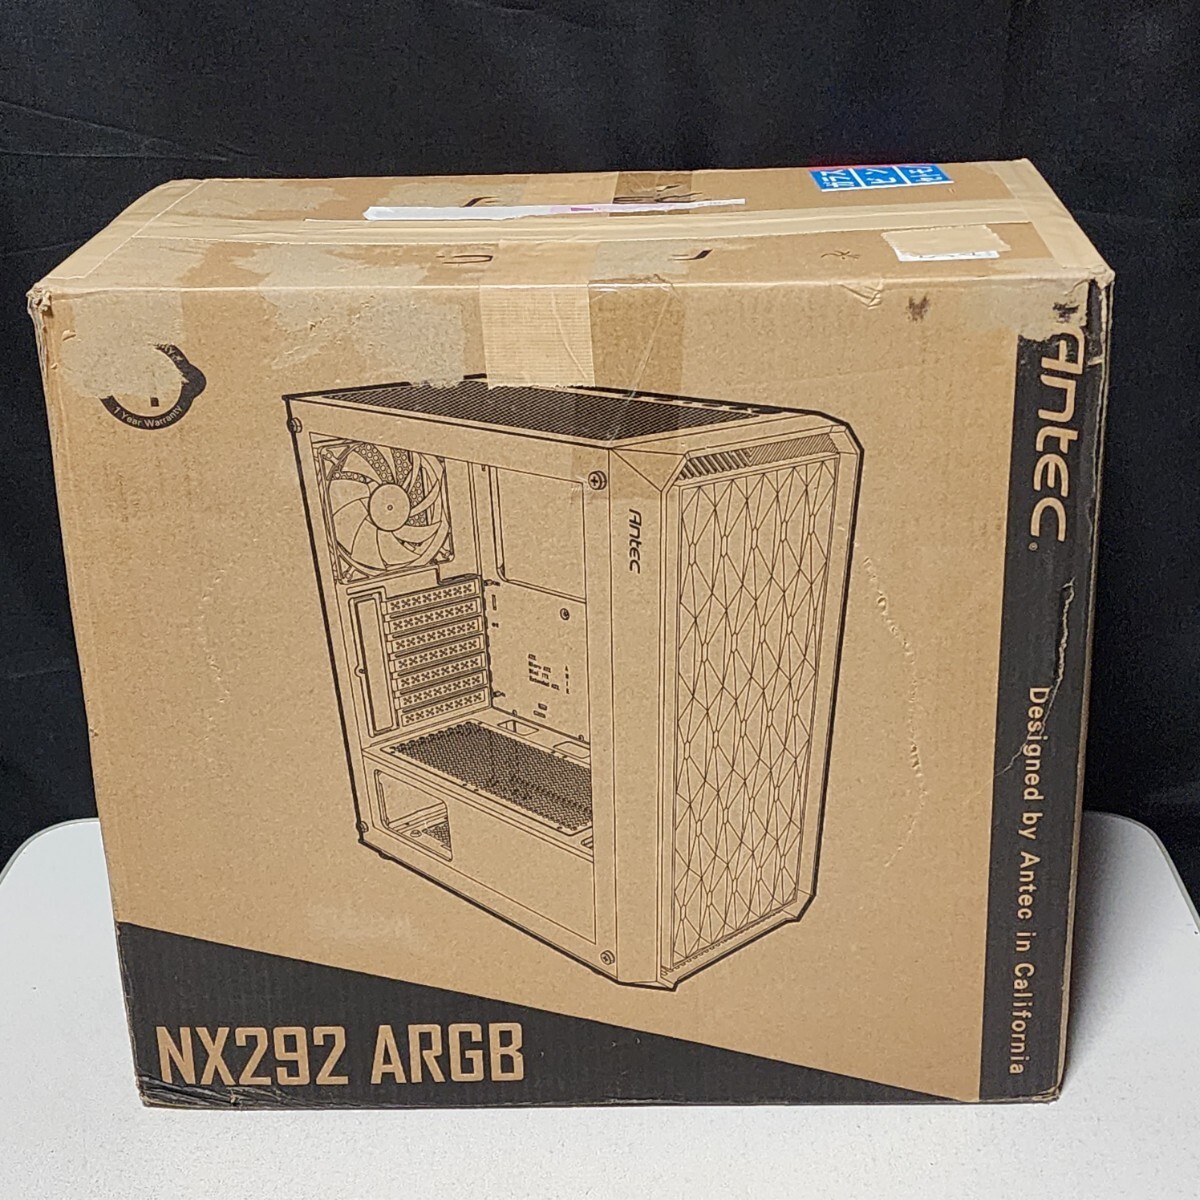 【送料無料】ANTEC NX292 ARGB ミドルタワー型PCケース(ATX) ARGBファン×4基搭載の画像1